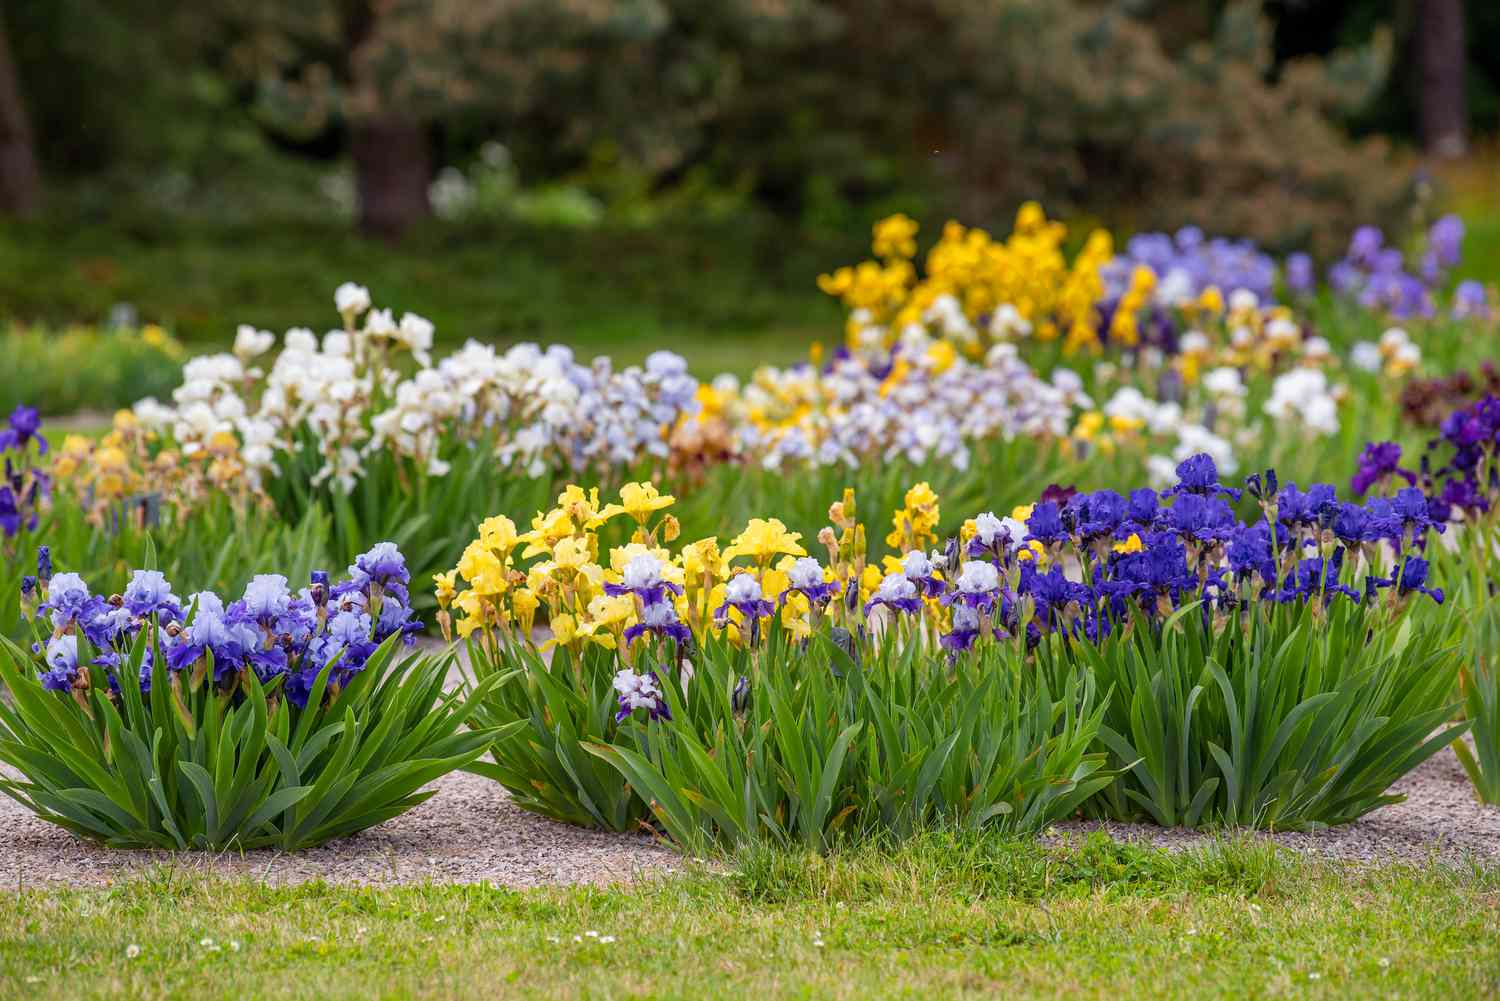 Irisblüten mit violetten, gelben und weißen Blütenblättern an gebündelten Stängeln im Garten